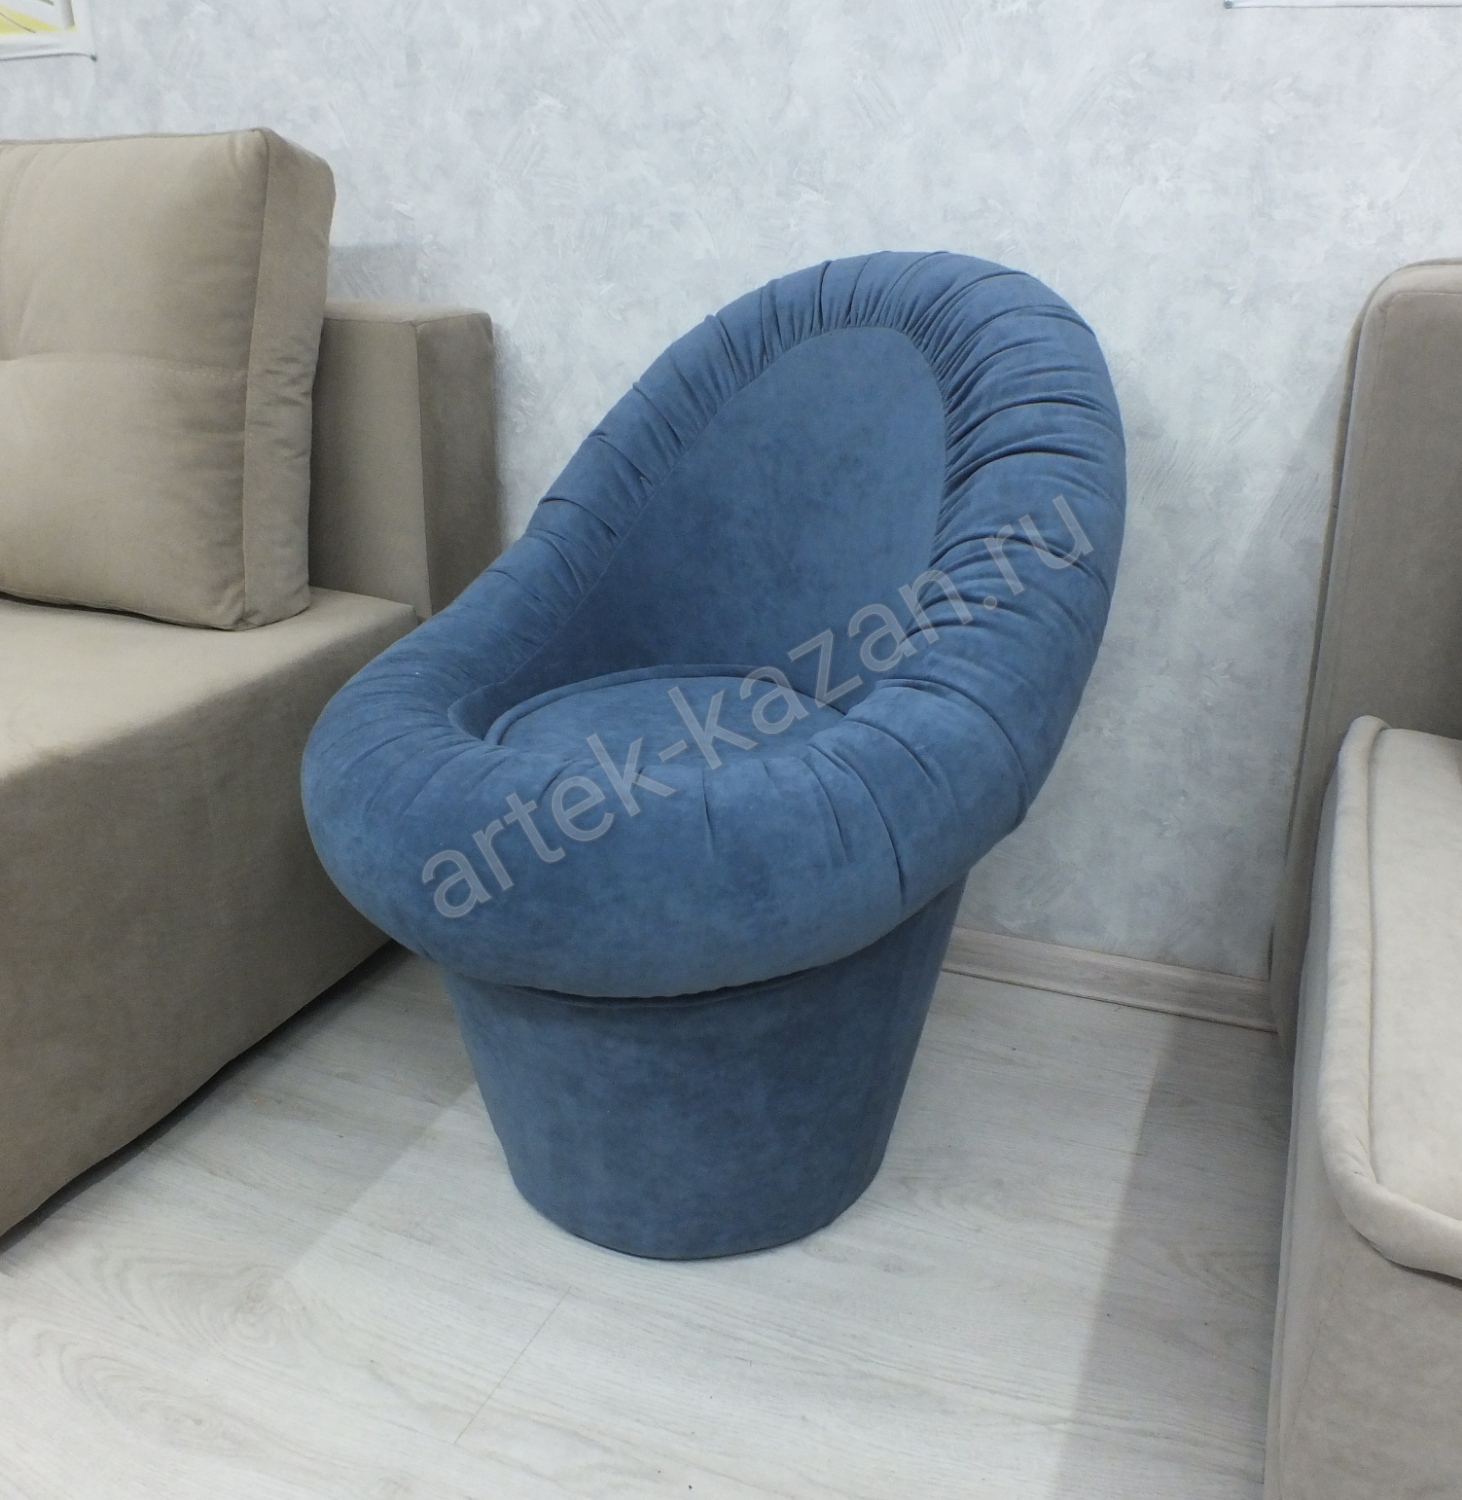 Кресло-пуф, фото 12. Купить недорогой диван по низкой цене от производителя можно у нас.